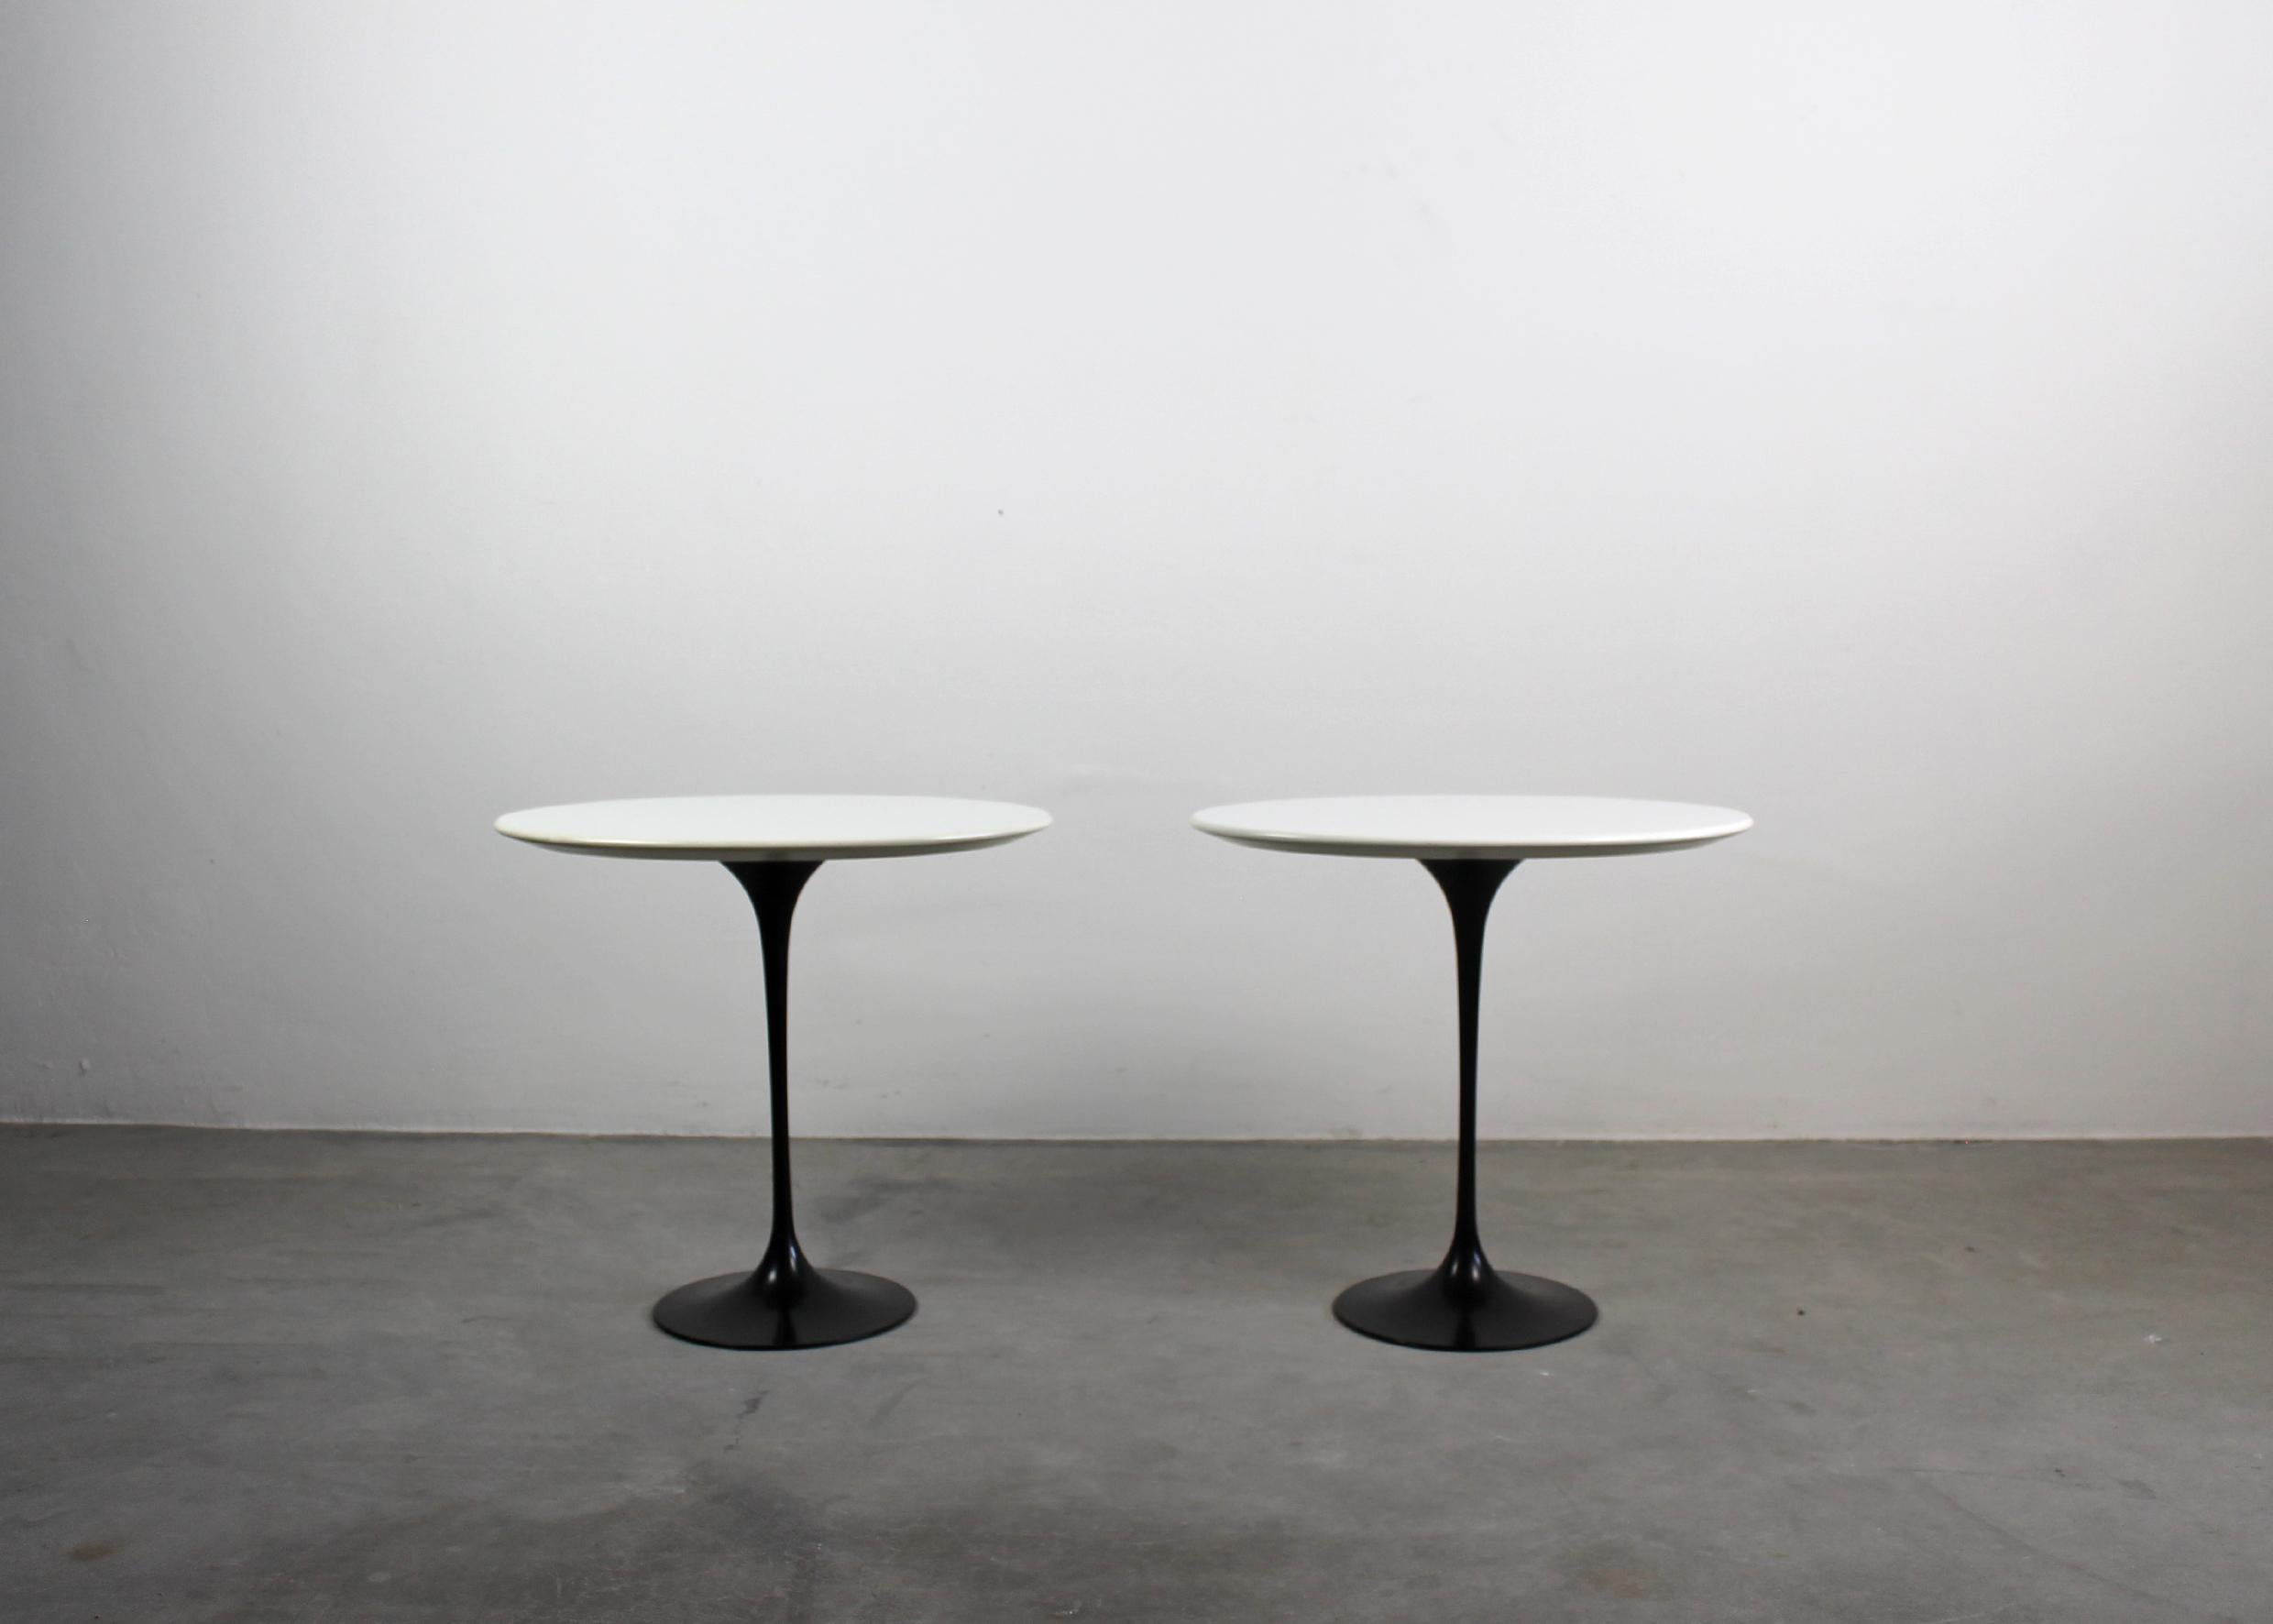 Ensemble de deux tables basses en bois laqué, et aluminium moulé sous pression peint. Dans le style d'Eero Saarinen, 1990 env.

Eero Saarinen est un architecte américain d'origine finlandaise né le 20 août 1910. Fils d'un architecte et d'un